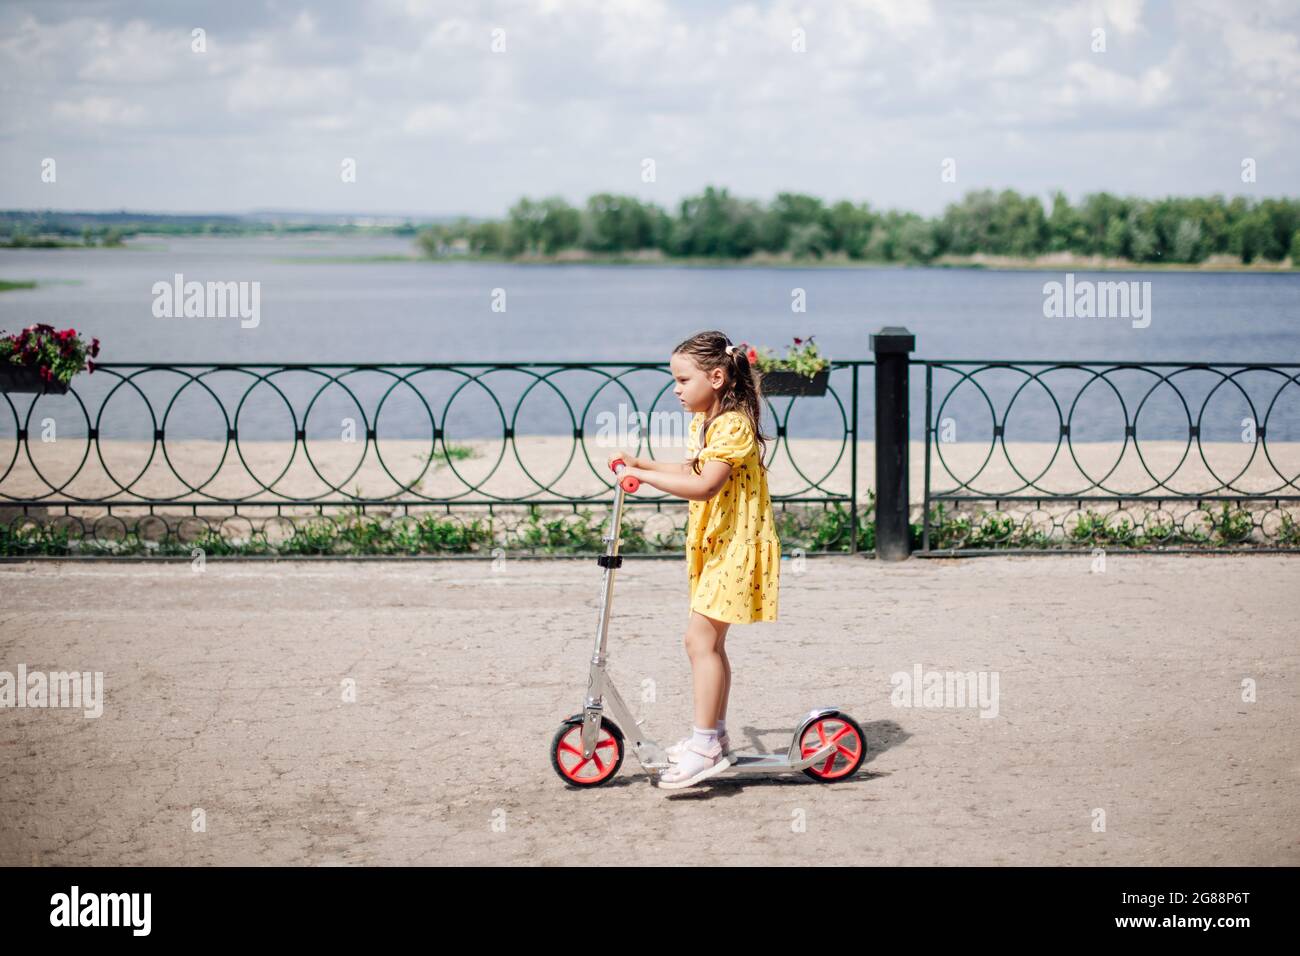 Lifestyle-Porträt, der Moment der Bewegung eines Mädchens auf einem Roller fährt ein Mädchen in einem Kleid mit einem Motorroller mit einem gusseisernen Zaun entlang des Flussufers Stockfoto